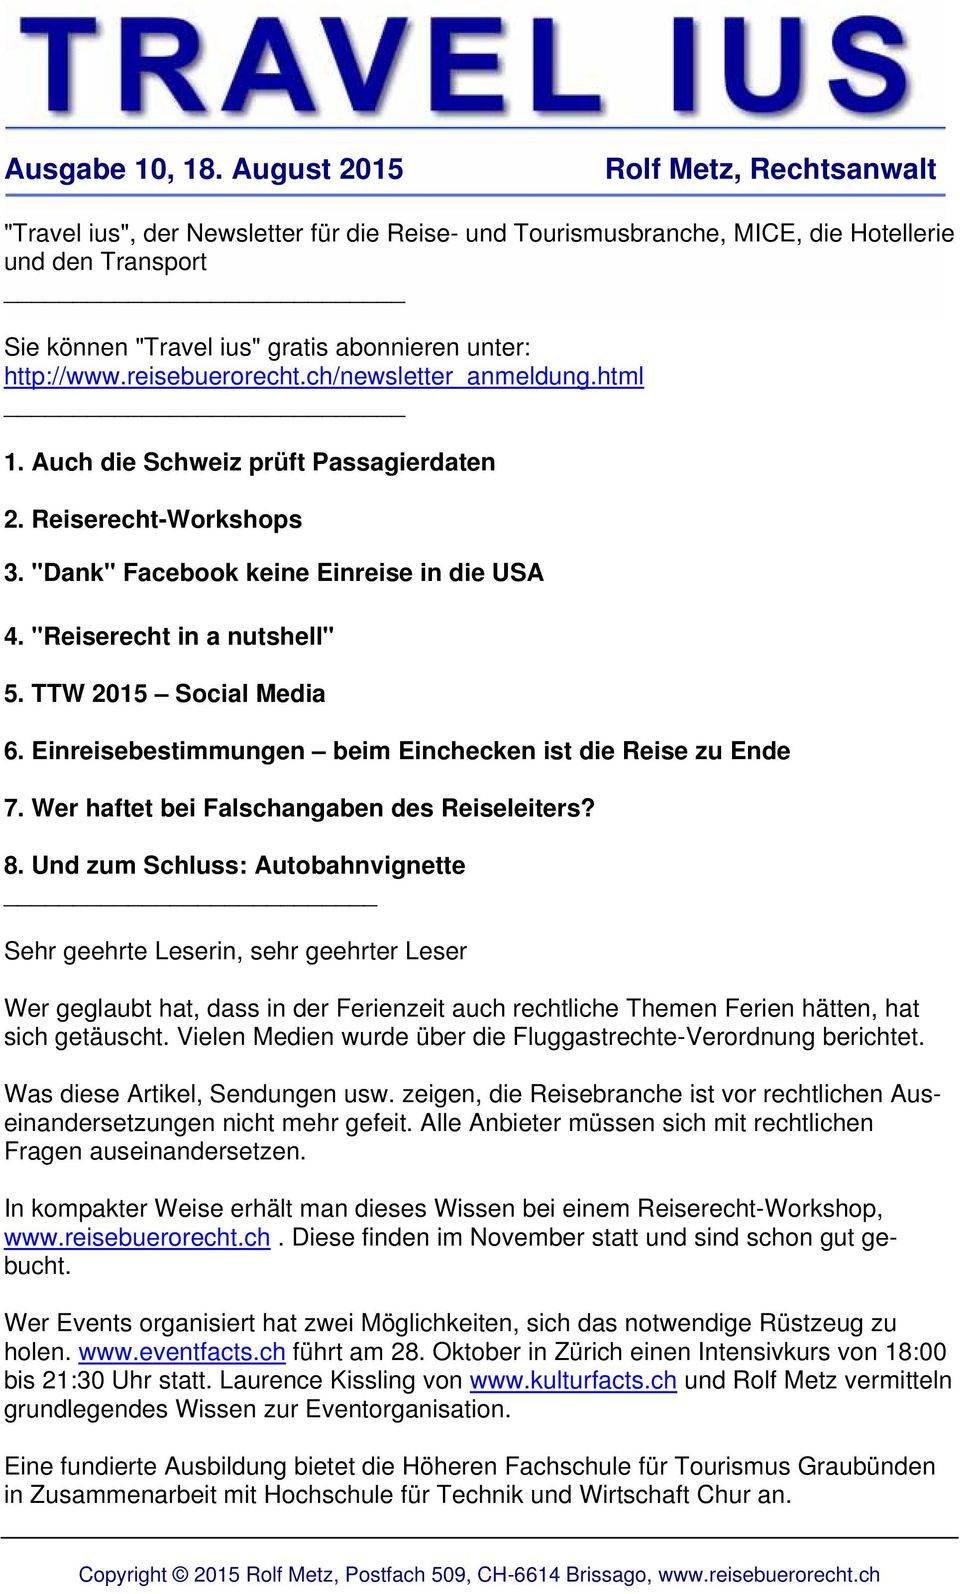 http://www.reisebuerorecht.ch/newsletter_anmeldung.html _ 1. Auch die Schweiz prüft Passagierdaten 2. Reiserecht-Workshops 3. "Dank" Facebook keine Einreise in die USA 4. "Reiserecht in a nutshell" 5.